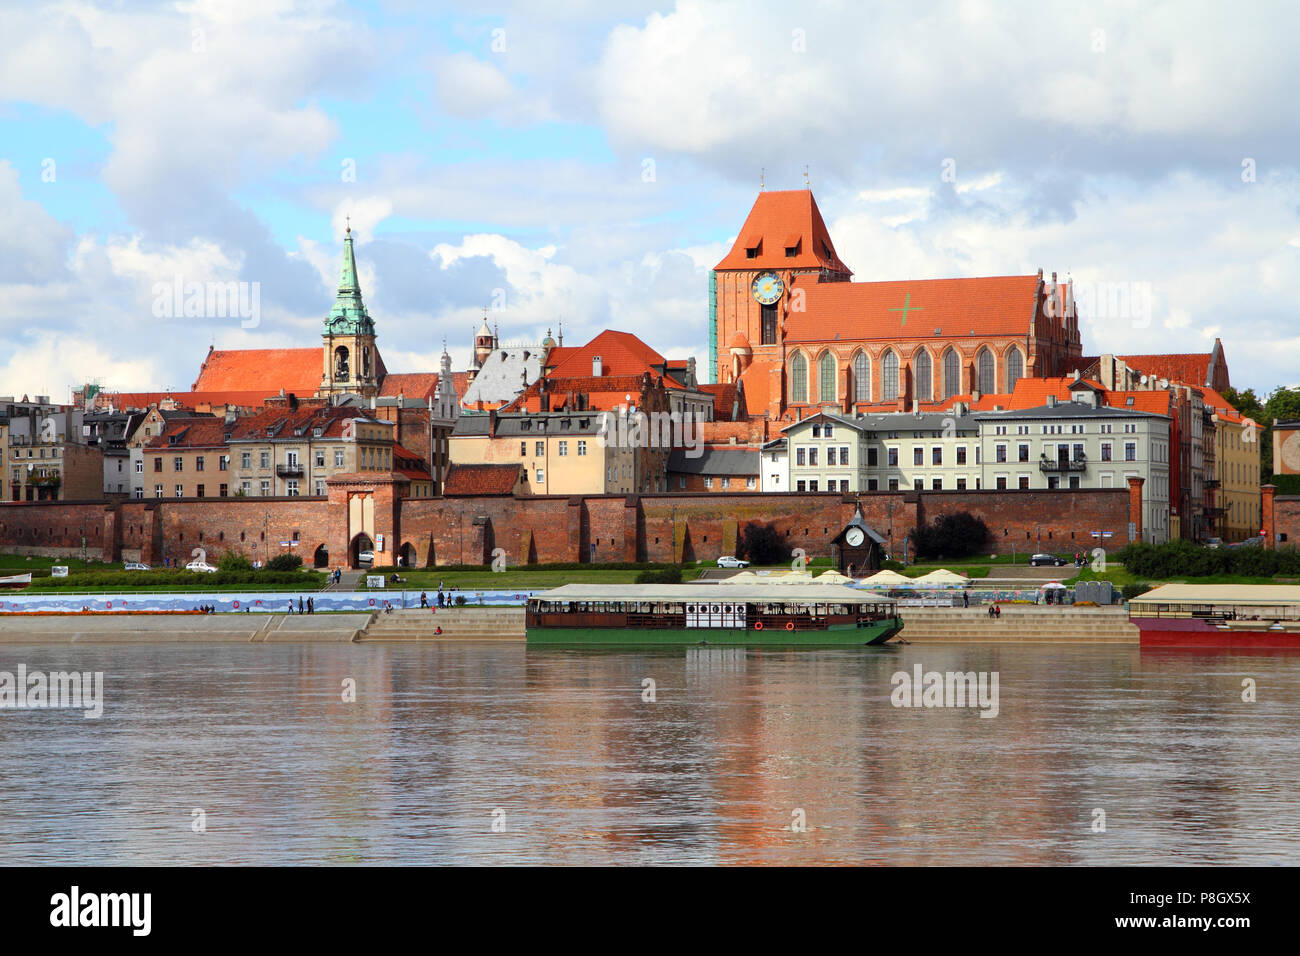 Pologne - Torun, ville divisée par la rivière Vistule entre occidentale et Kuyavia régions. La vieille ville médiévale est un UNESCO World Heritage Site. Banque D'Images